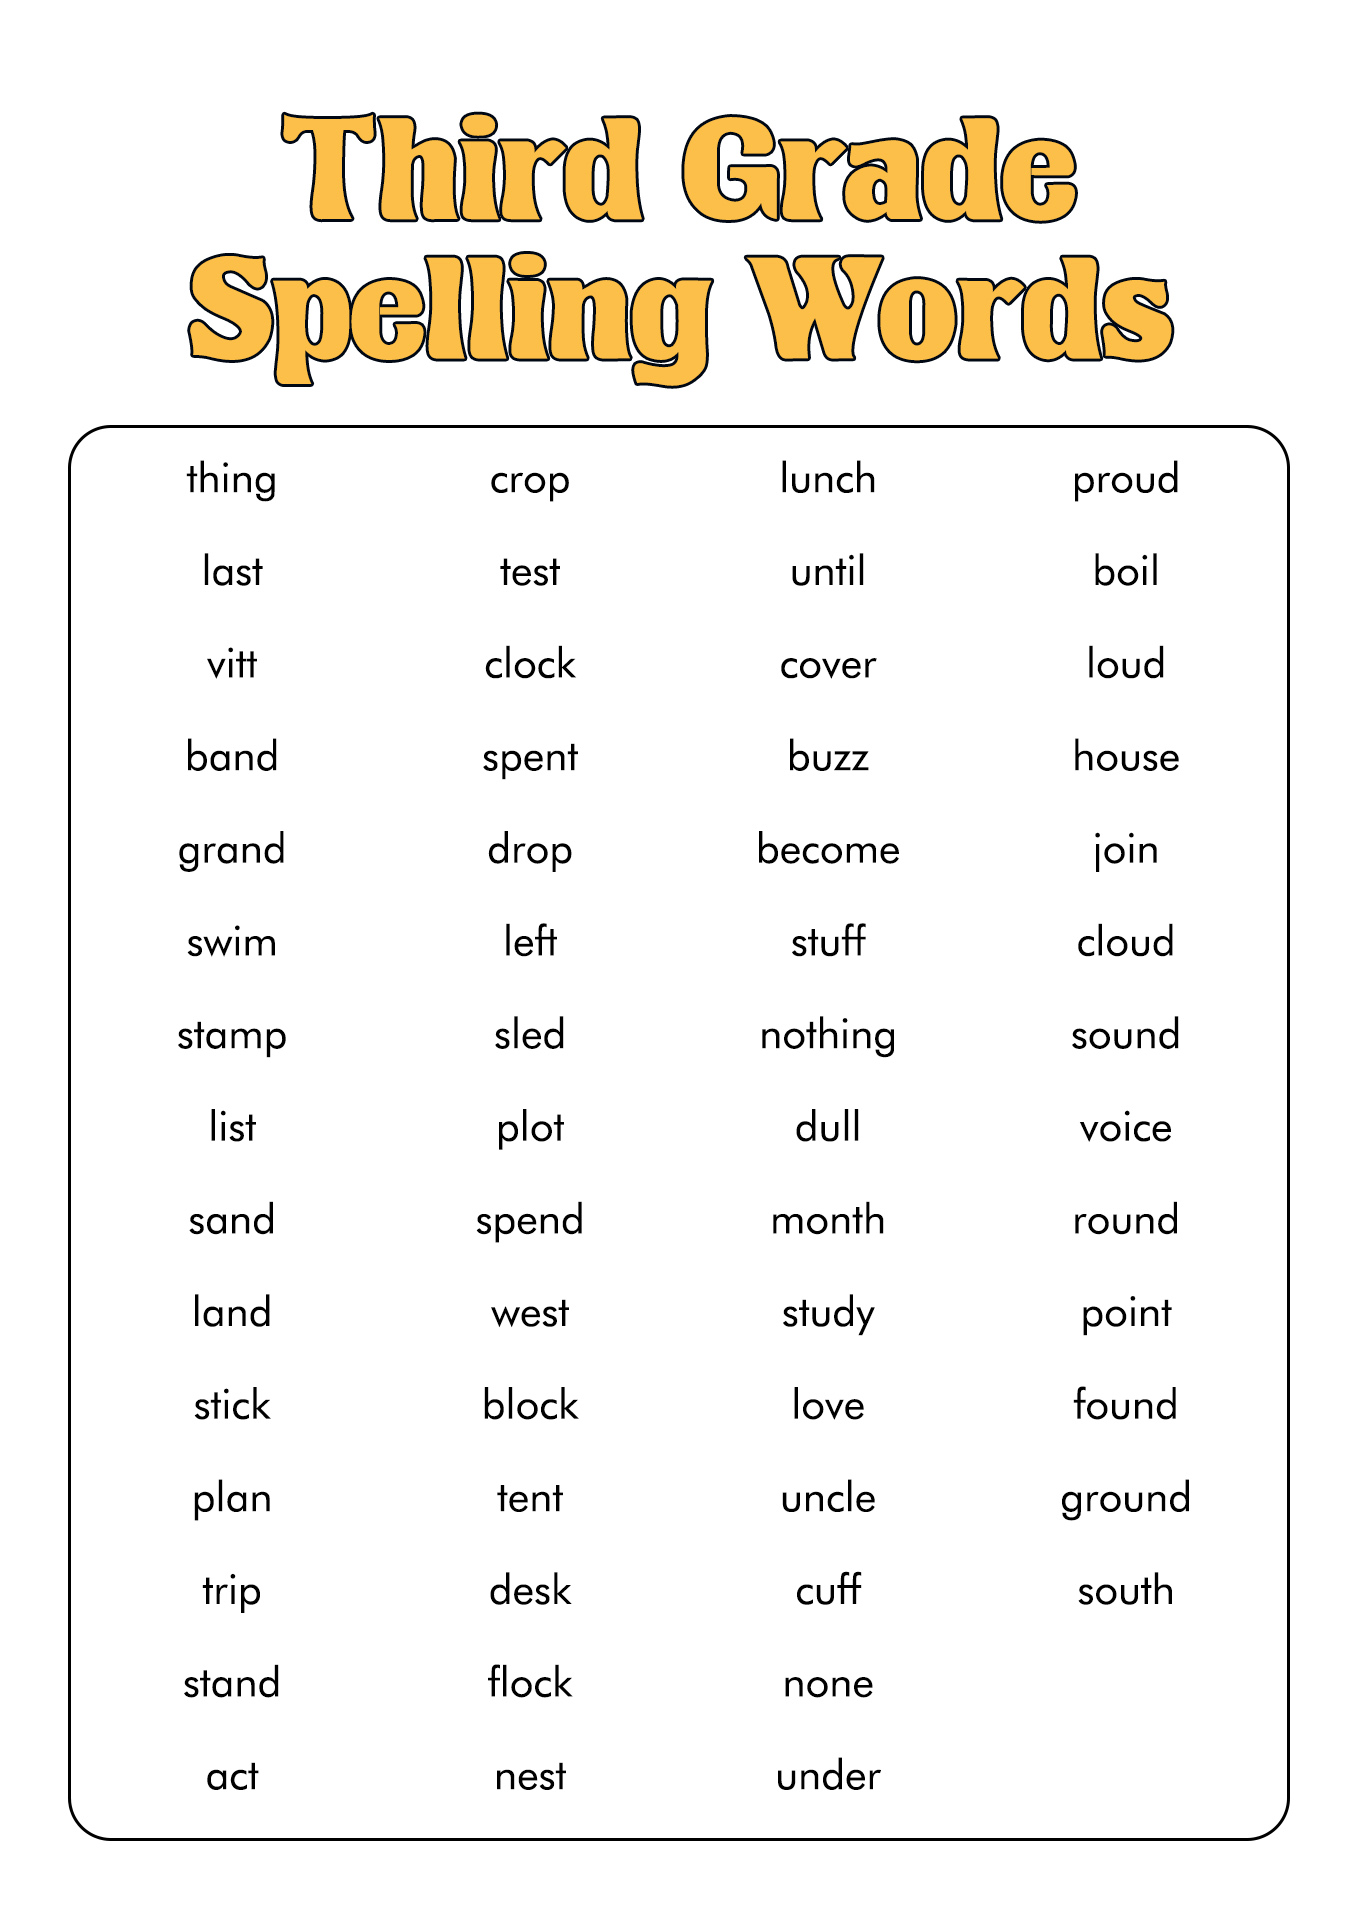 3rd-grade-spelling-words-gambaran